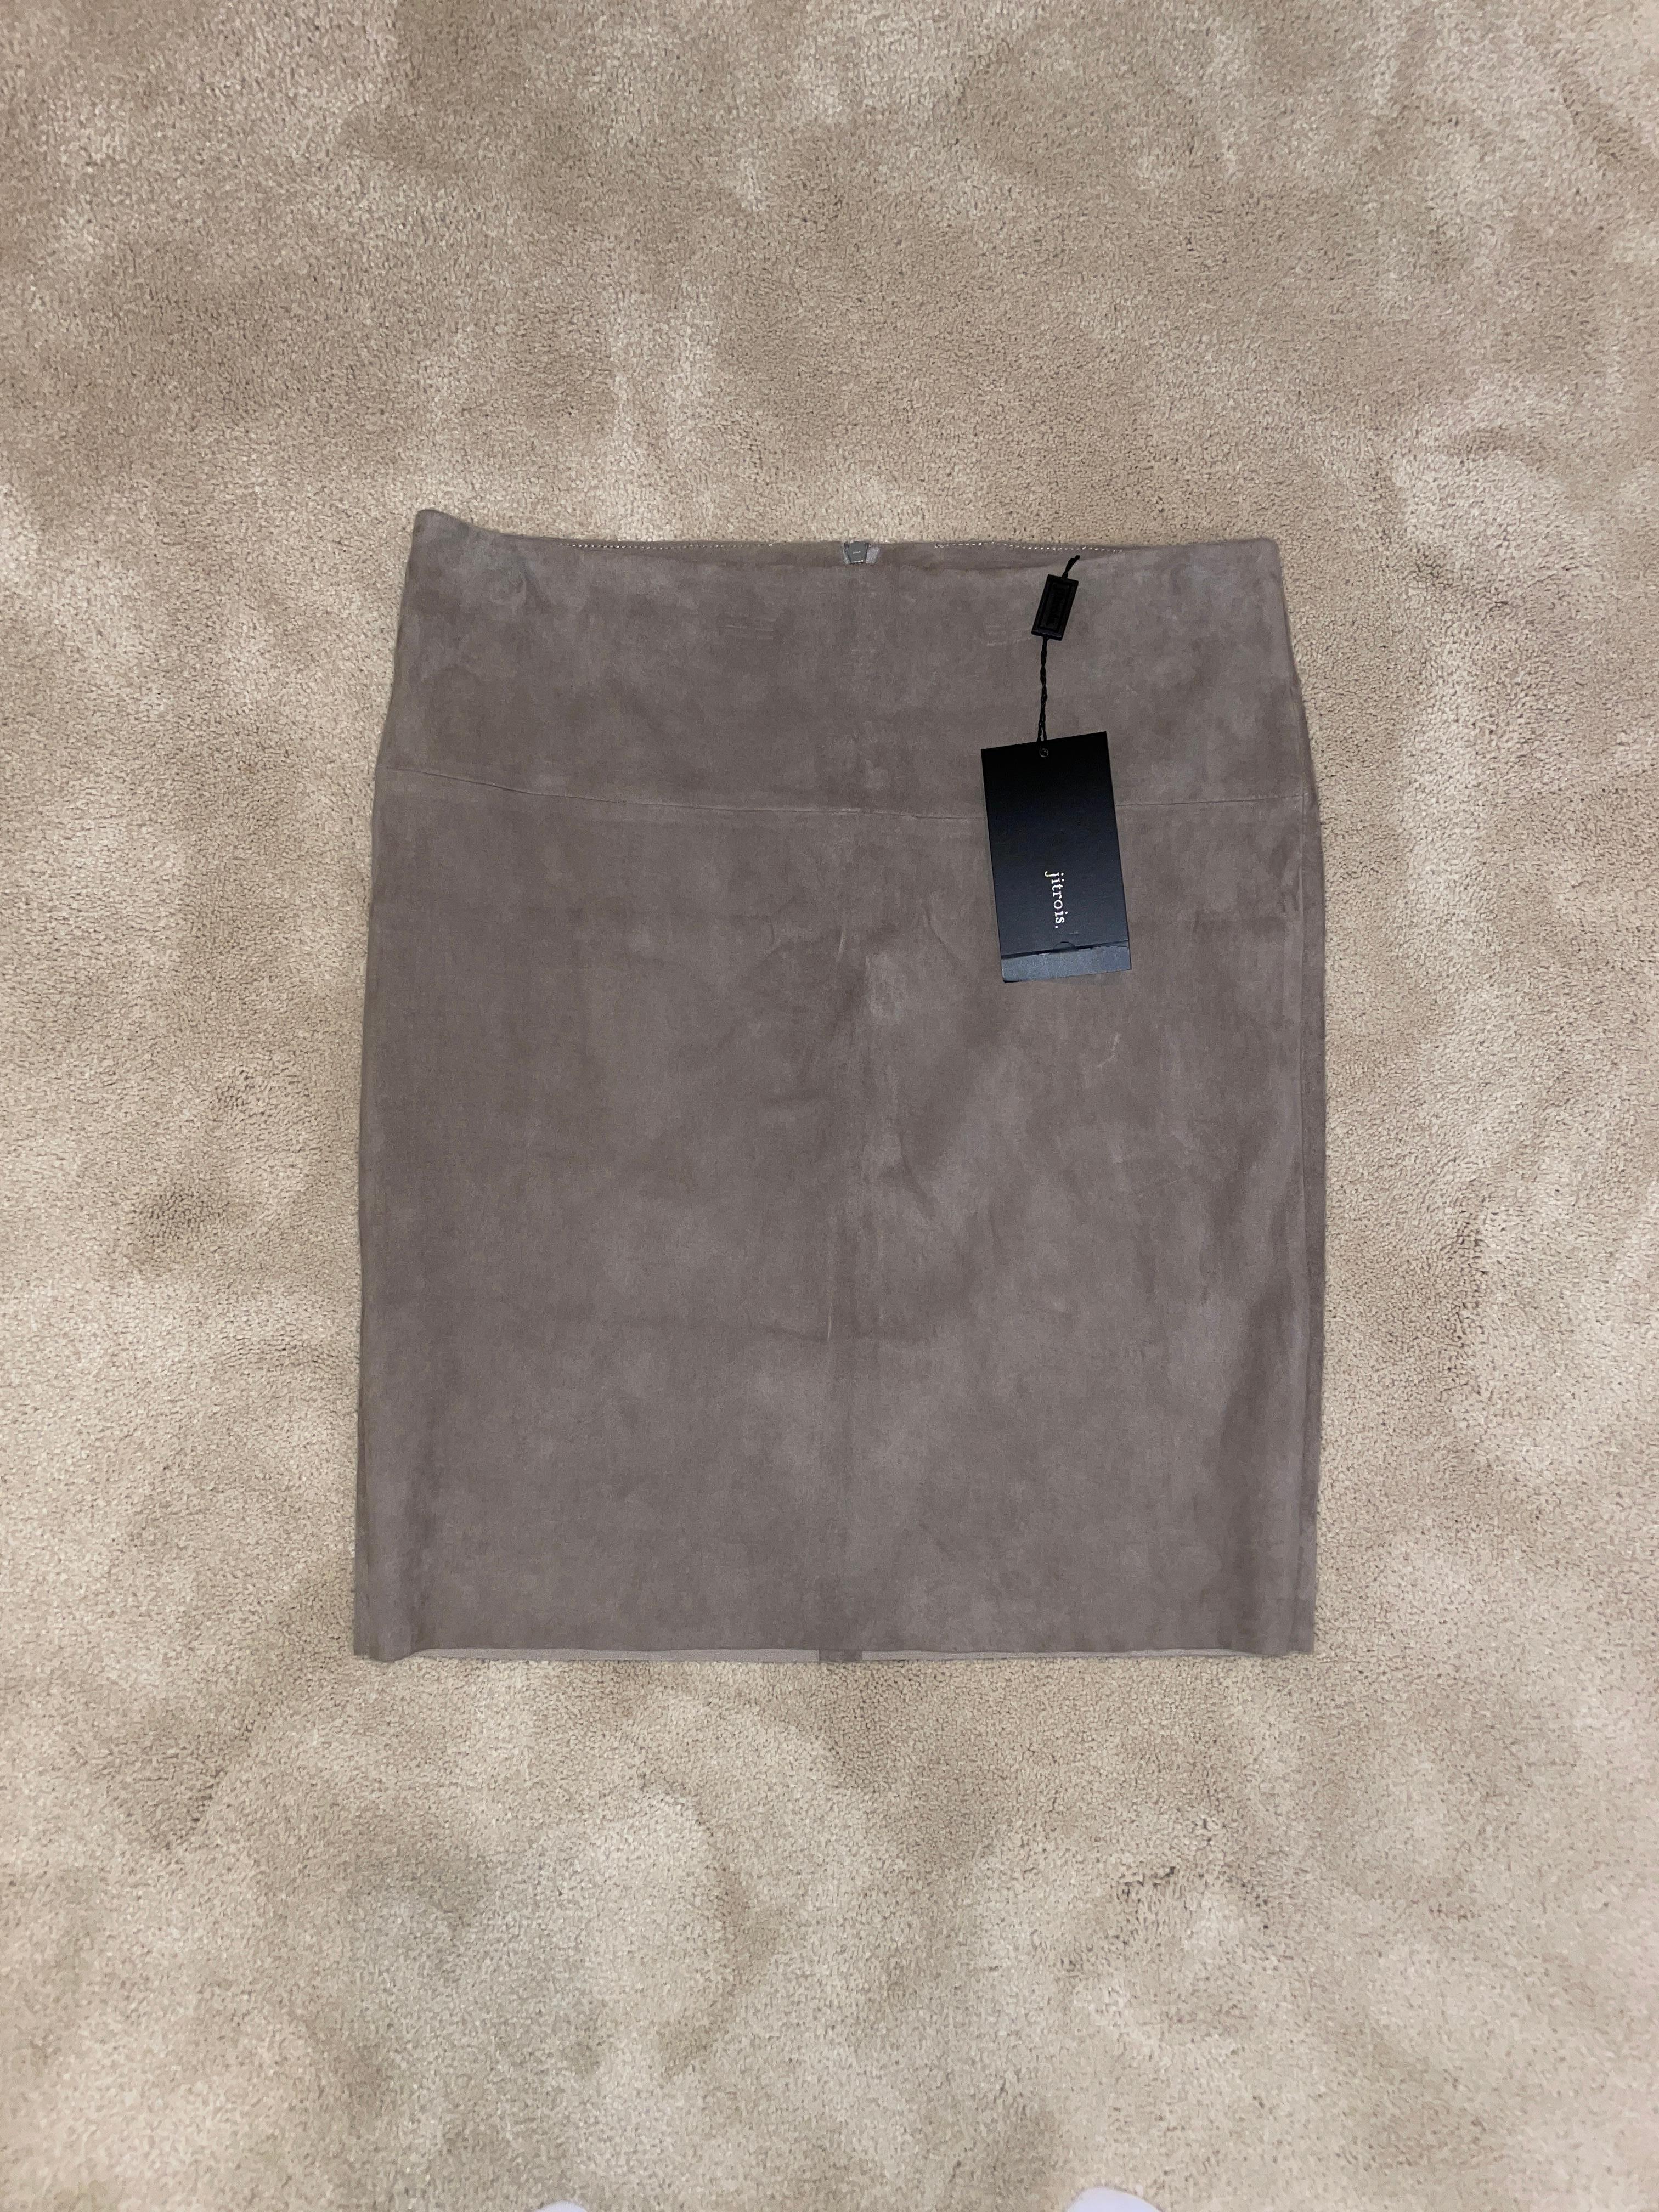 NWT's Jitrois tan beige pencil stretch suede skirt. Très confortable, sans défaut, léger. F40, Mesures à plat en pouces : taille 15, hanches 17, longueur 18.5 ... la taille 15 ne peut pas s'étirer mais le reste de la jupe peut s'étirer de 1